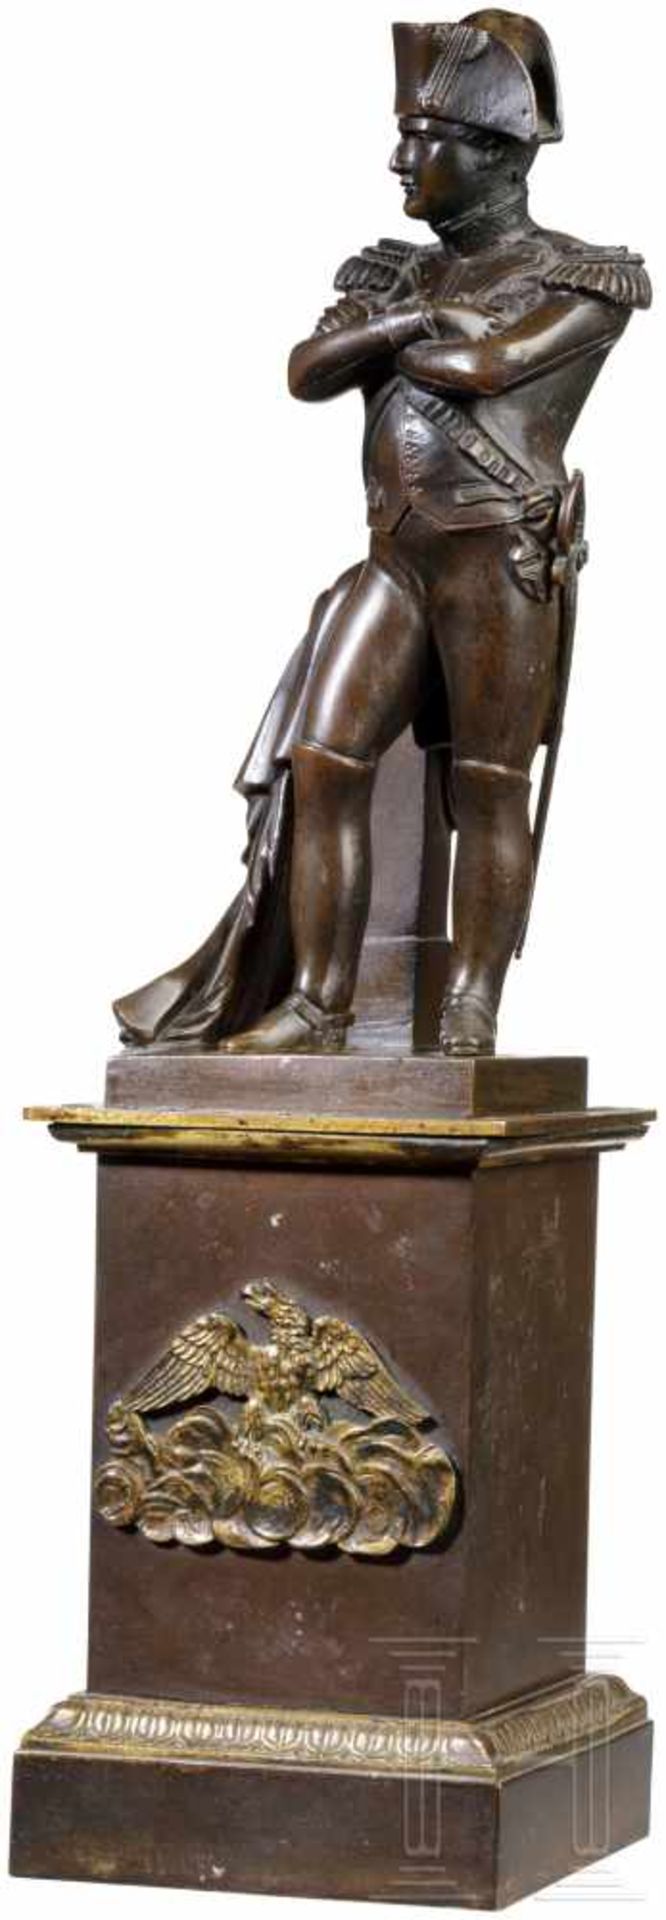 Skulptur Napoléon Bonapartes in Uniform, Frankreich, 19. Jhdt.Freistehende Figur des Kaisers von